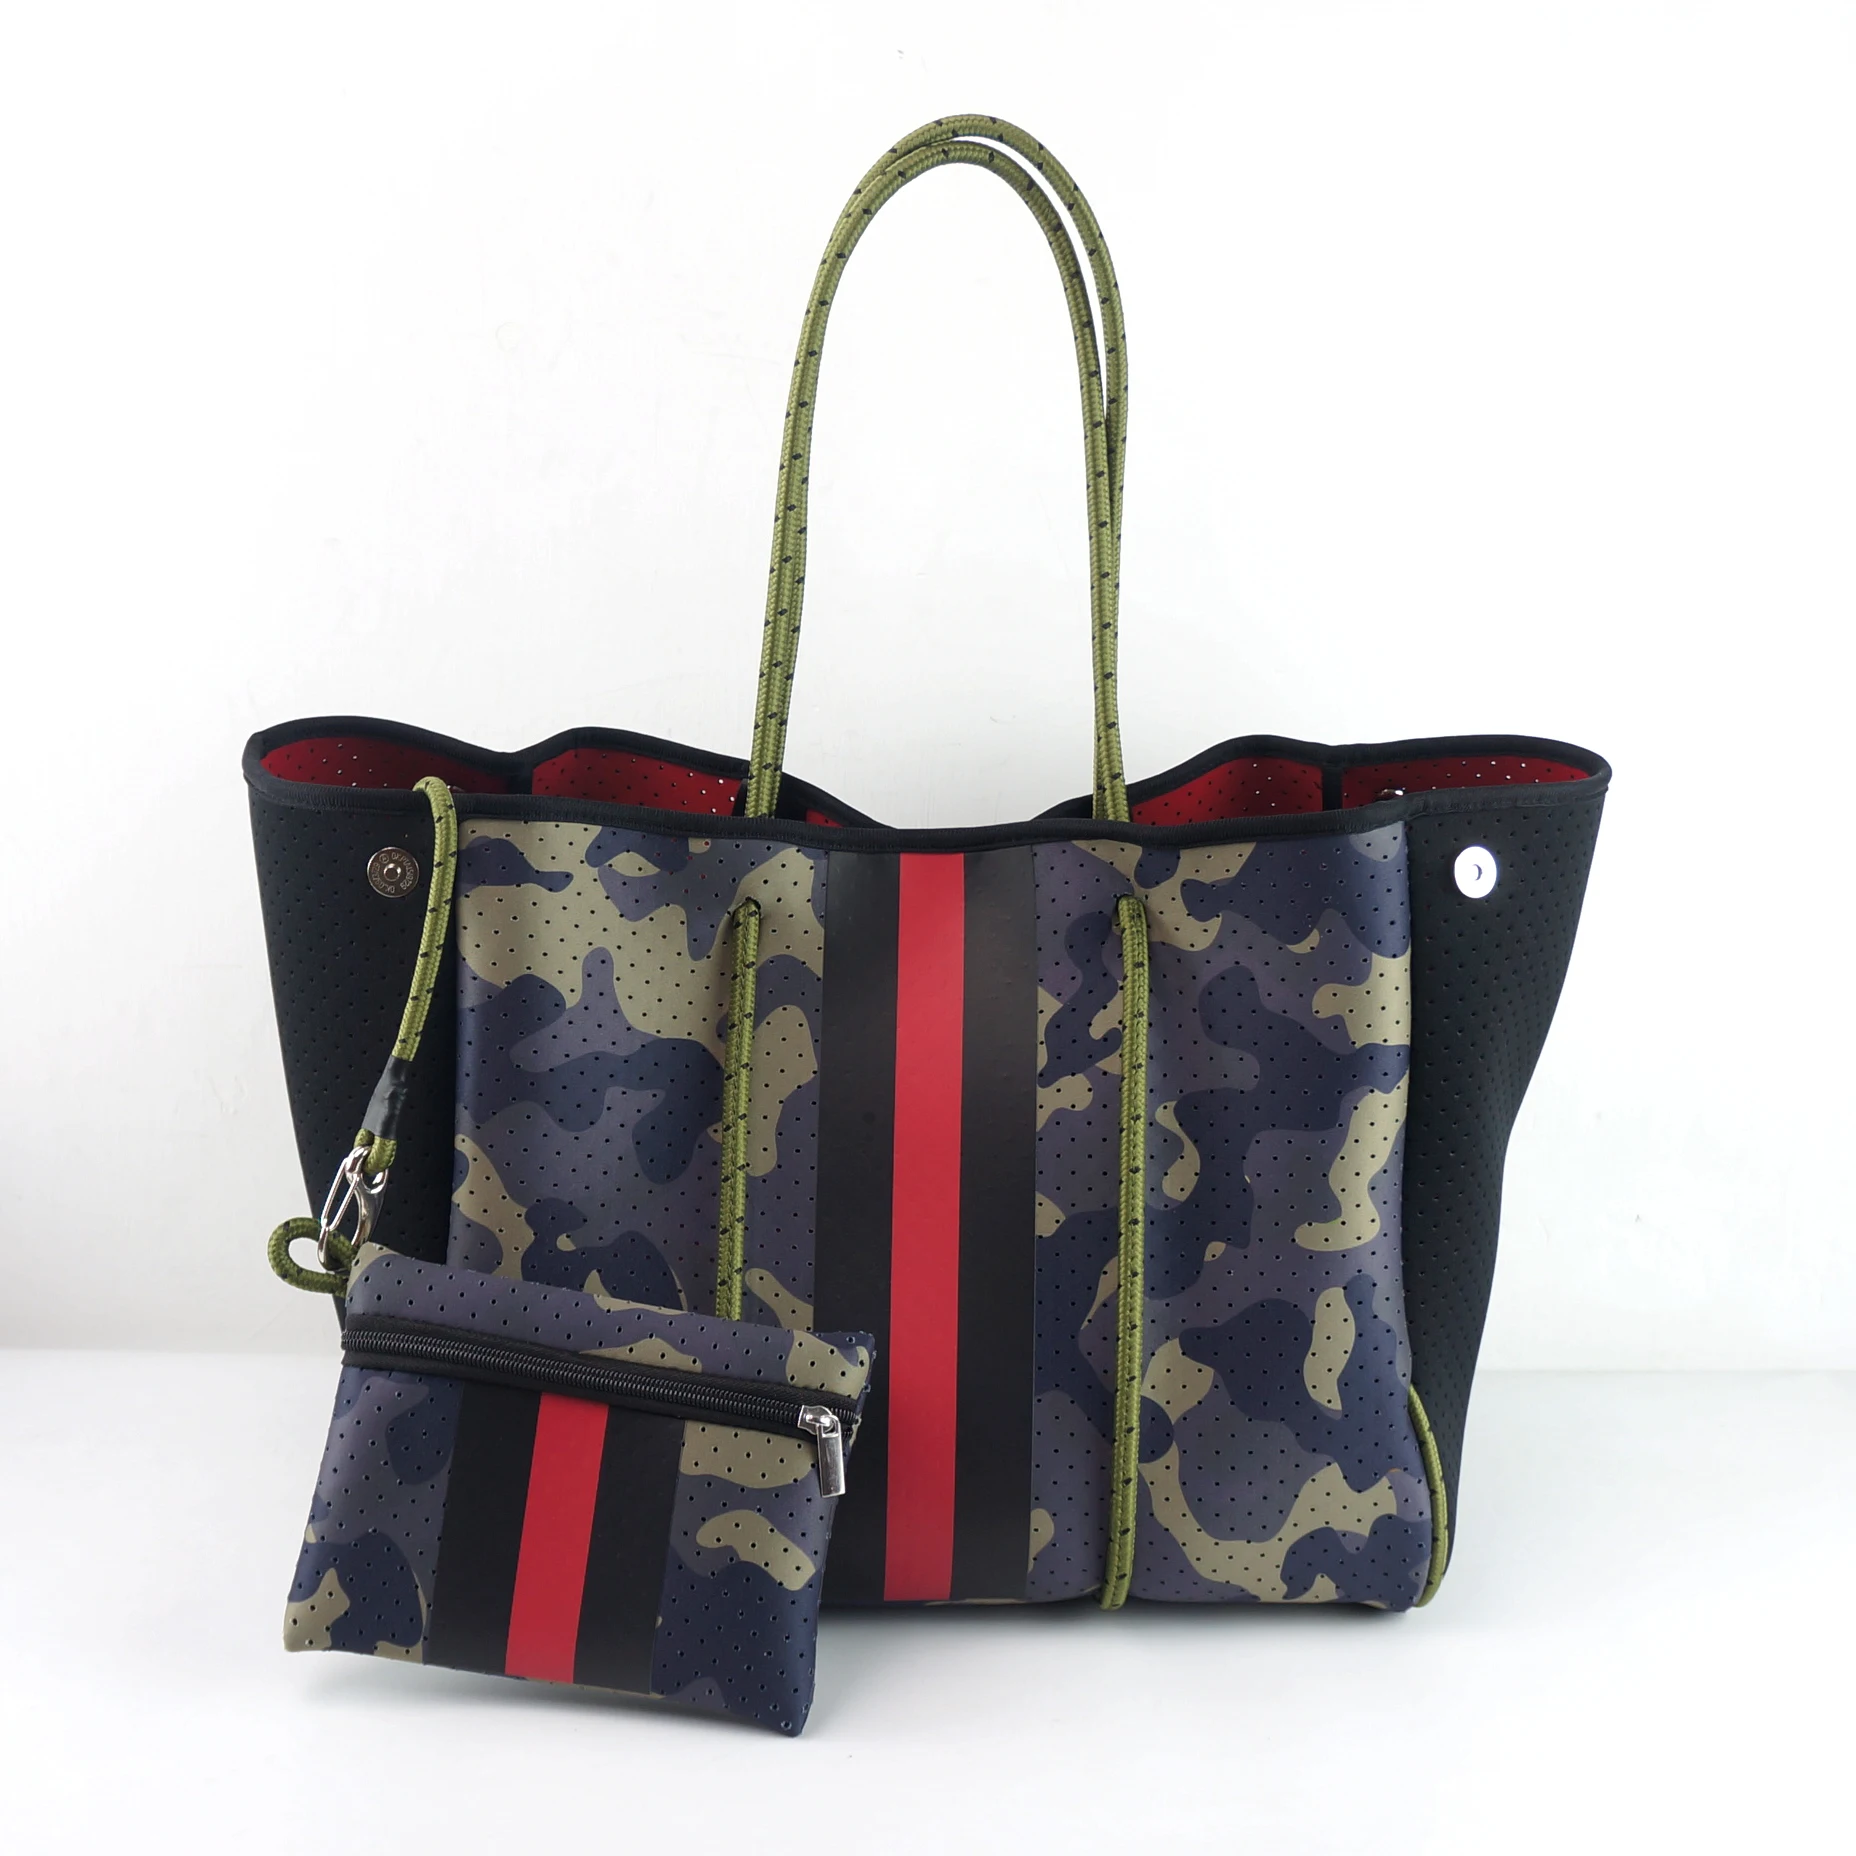 

Neoprene Bag Travel Hand Bag With Large Pouch Inside Neoprene Lady Tote Handbag Bag Neoprene Purse for women